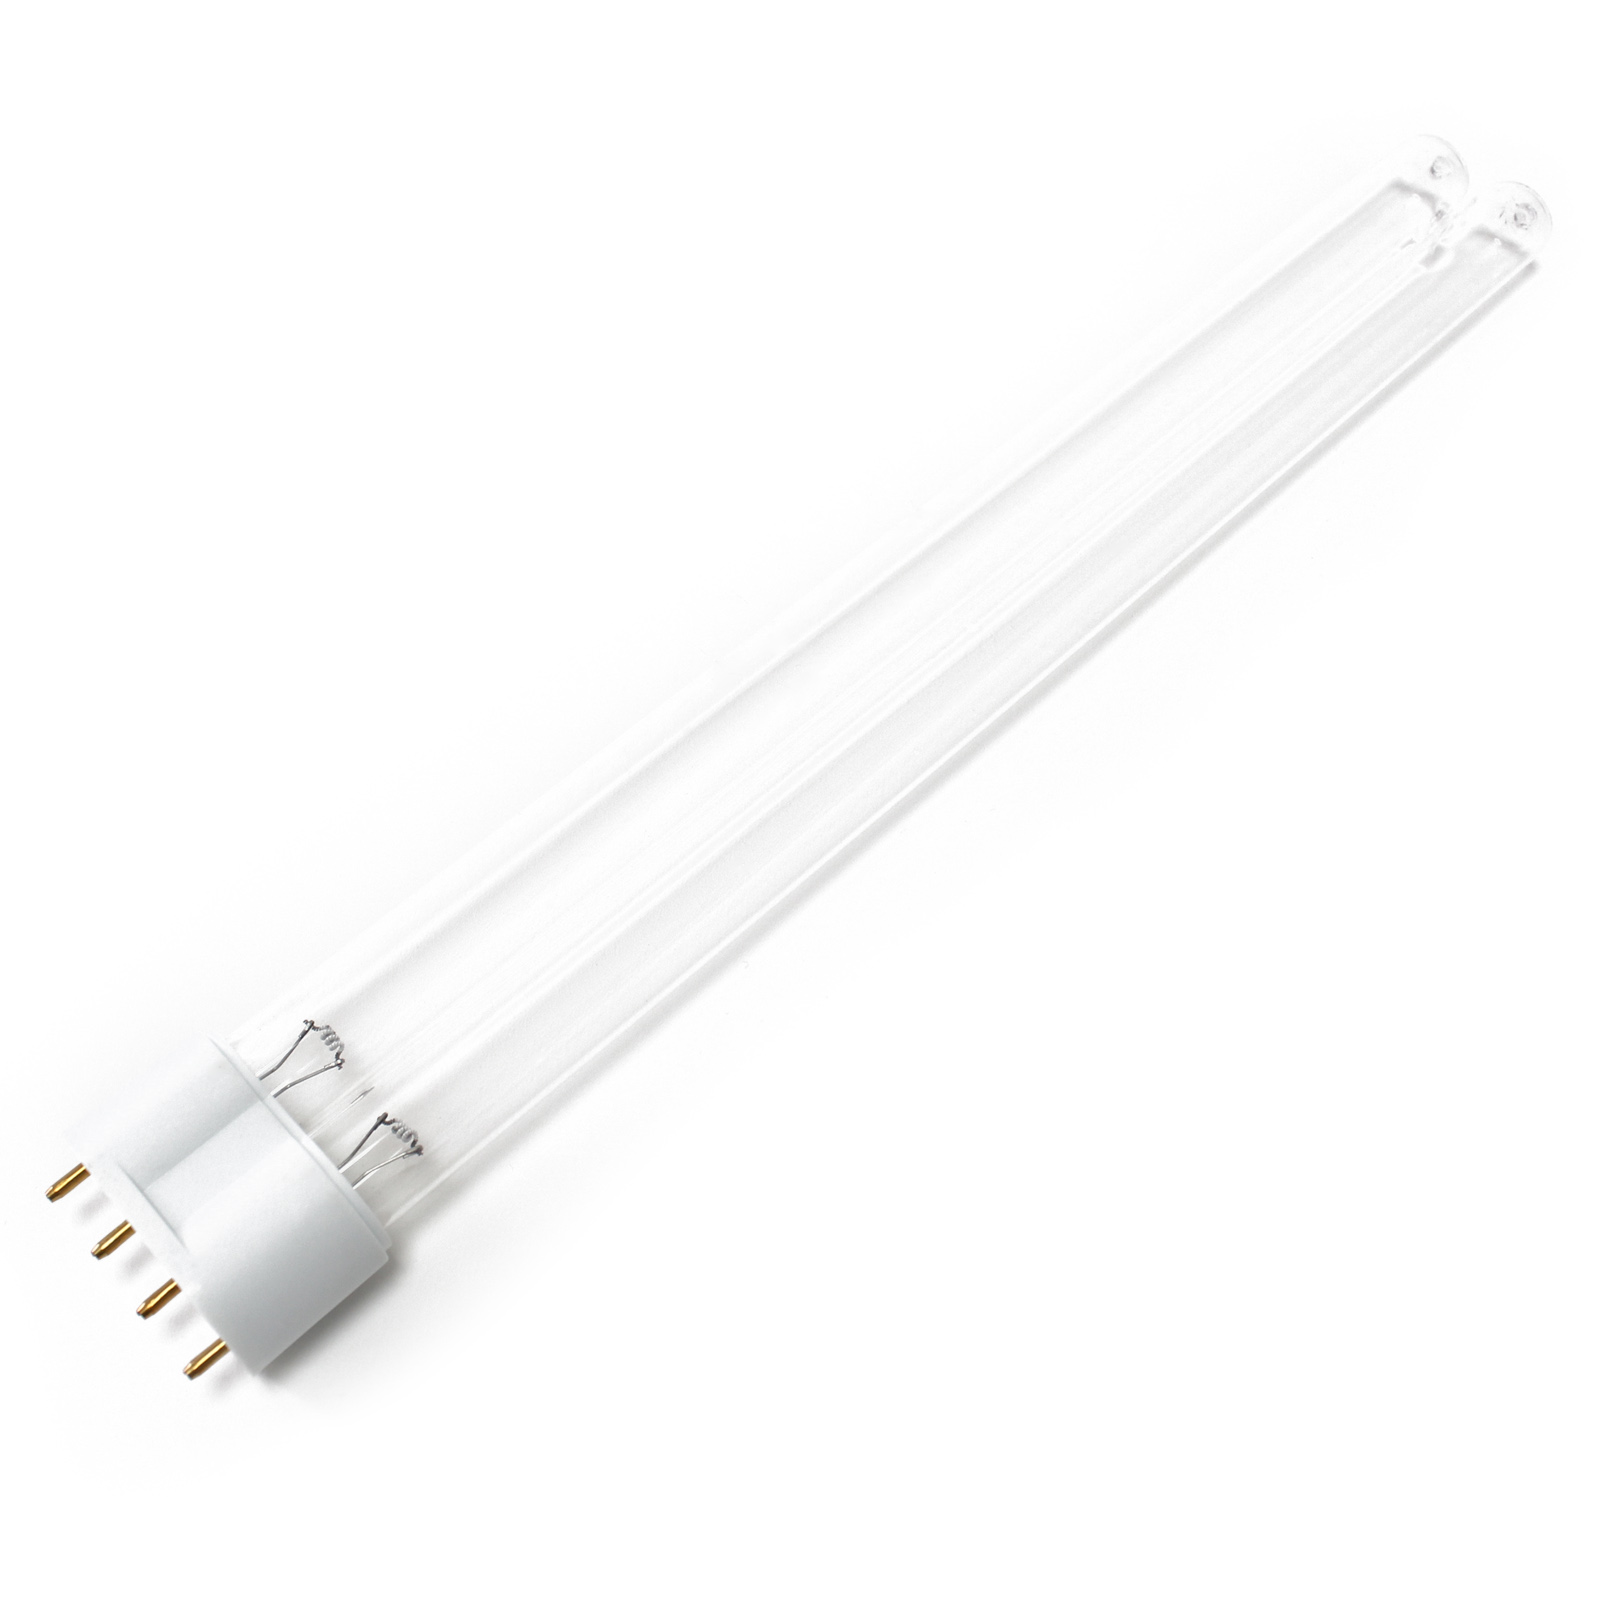 CUV-155 UV-C Lampe Röhre 55W Teich-Klärer UVC Leuchtmittel